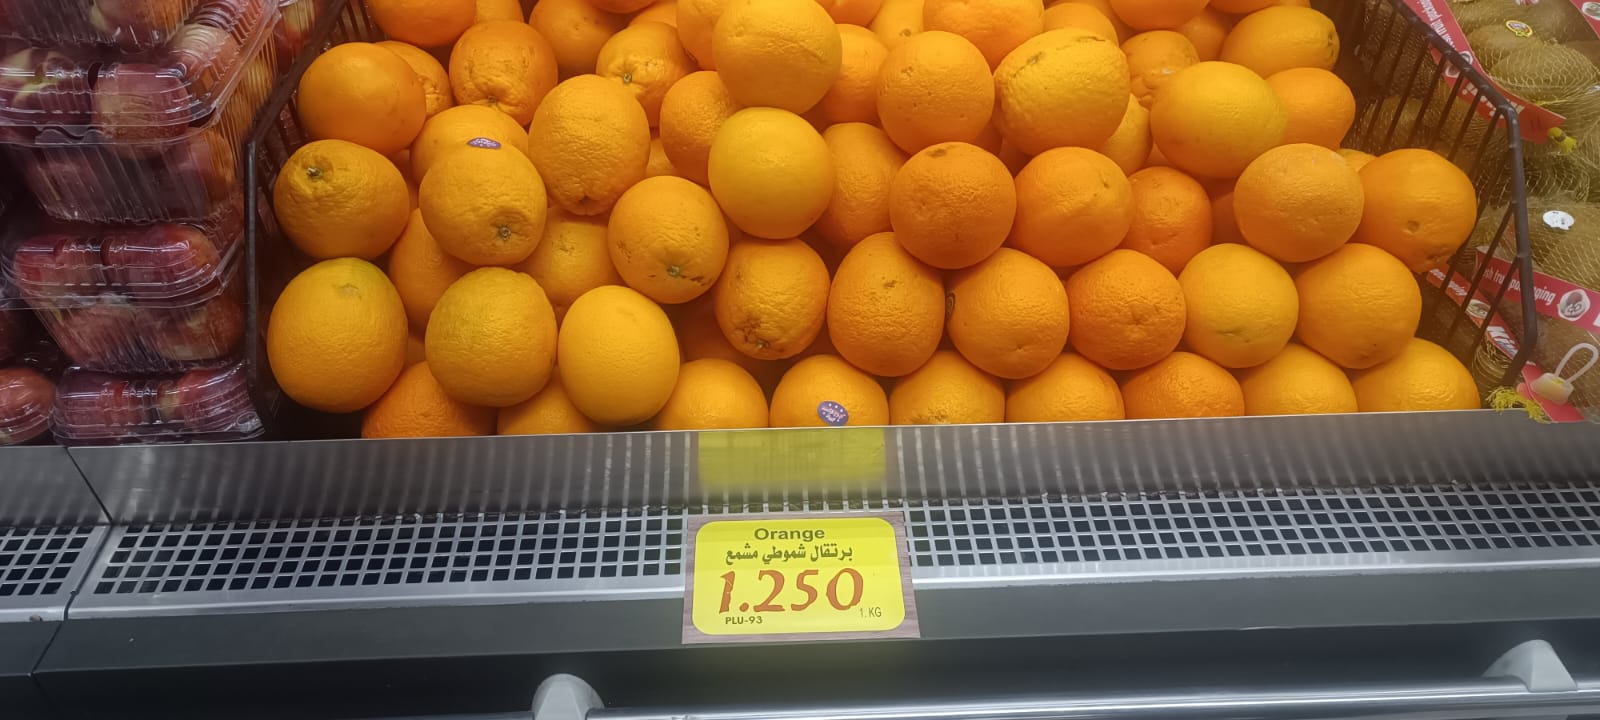 كيلو البرتقال المصري في الأردن يوازي 80 جنيهًا